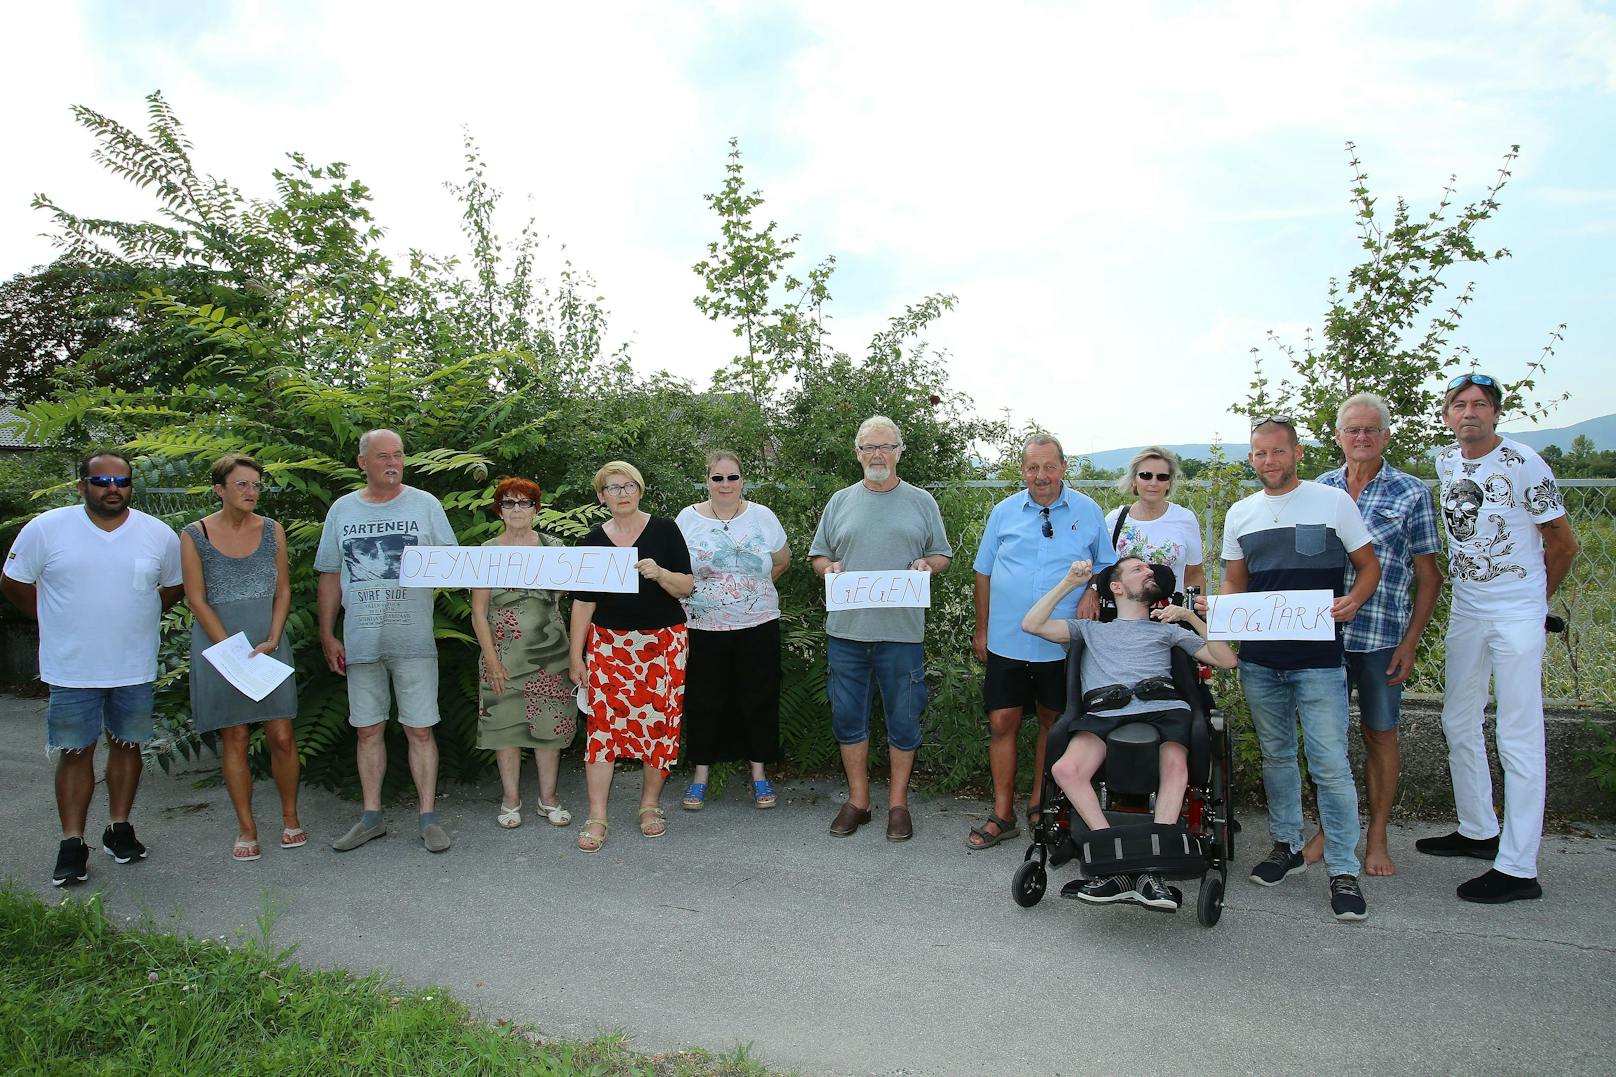 Protest gegen Logistikzentrum in Oynhausen: Unterschriften werden gesammelt.